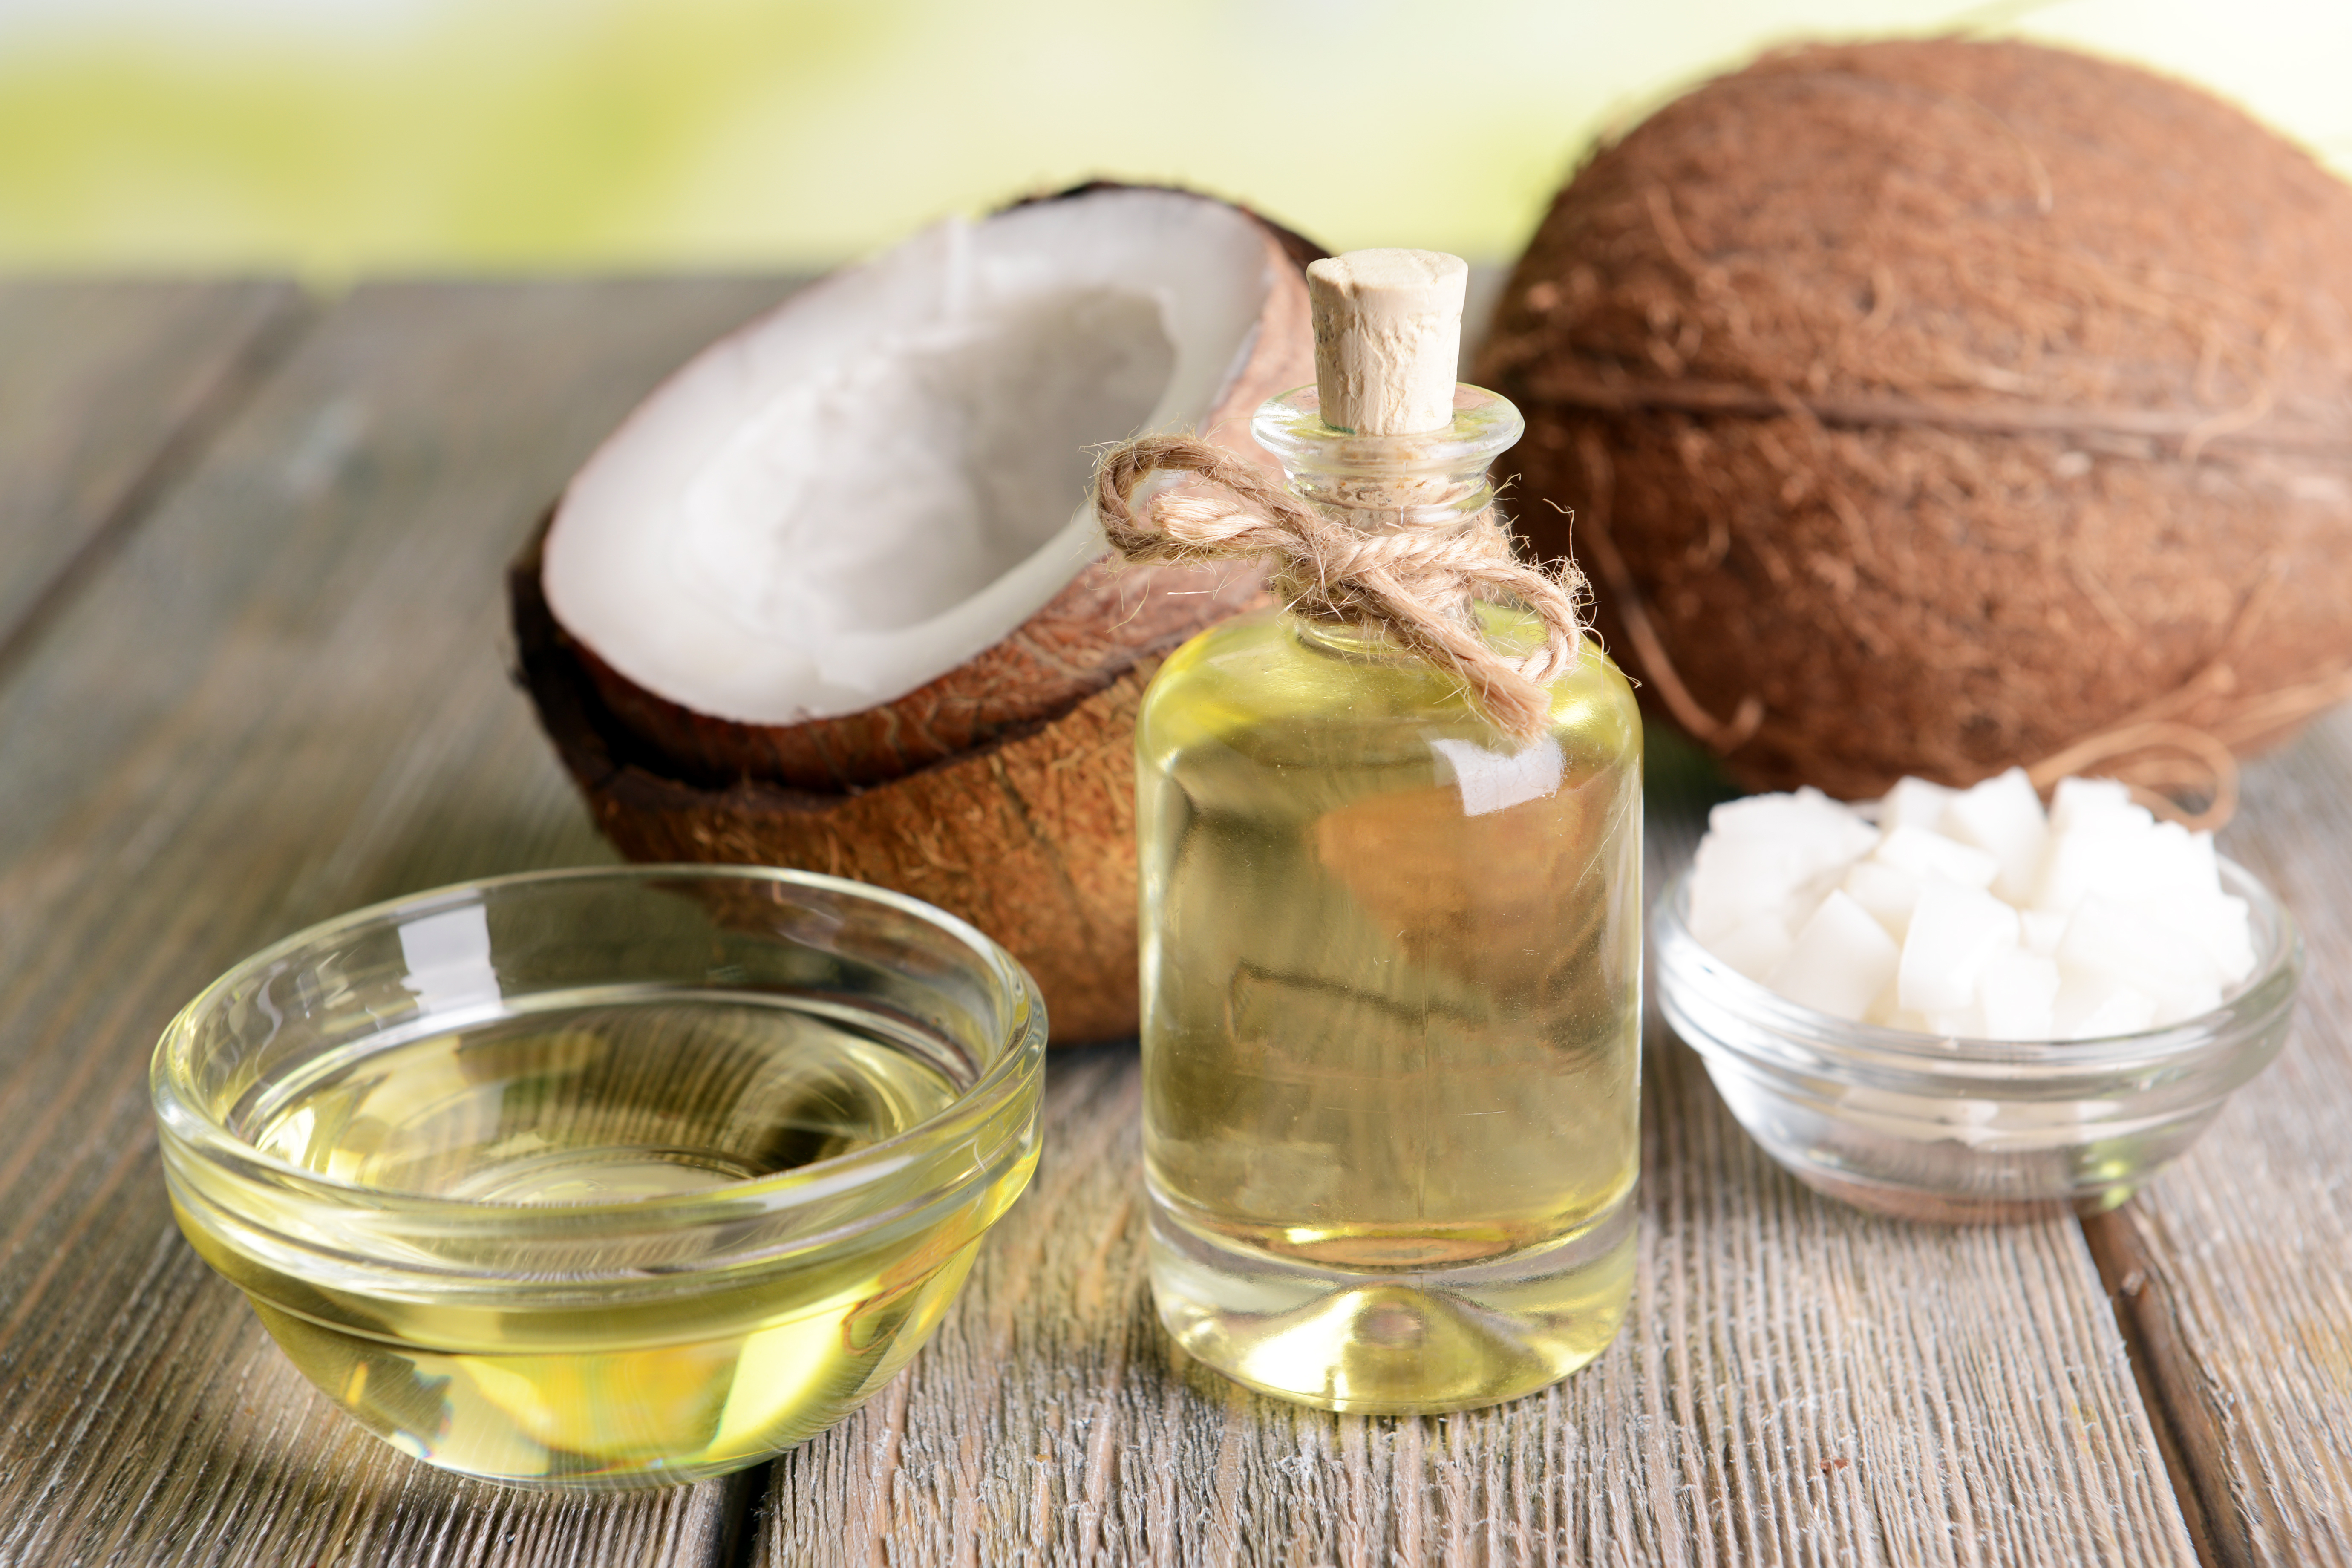 El aceite de coco es una herramienta natural que puede utilizar a su favor, para mejorar el aspecto de su piel, cabello y dientes. (Foto Prensa Libre: Shutterstock)